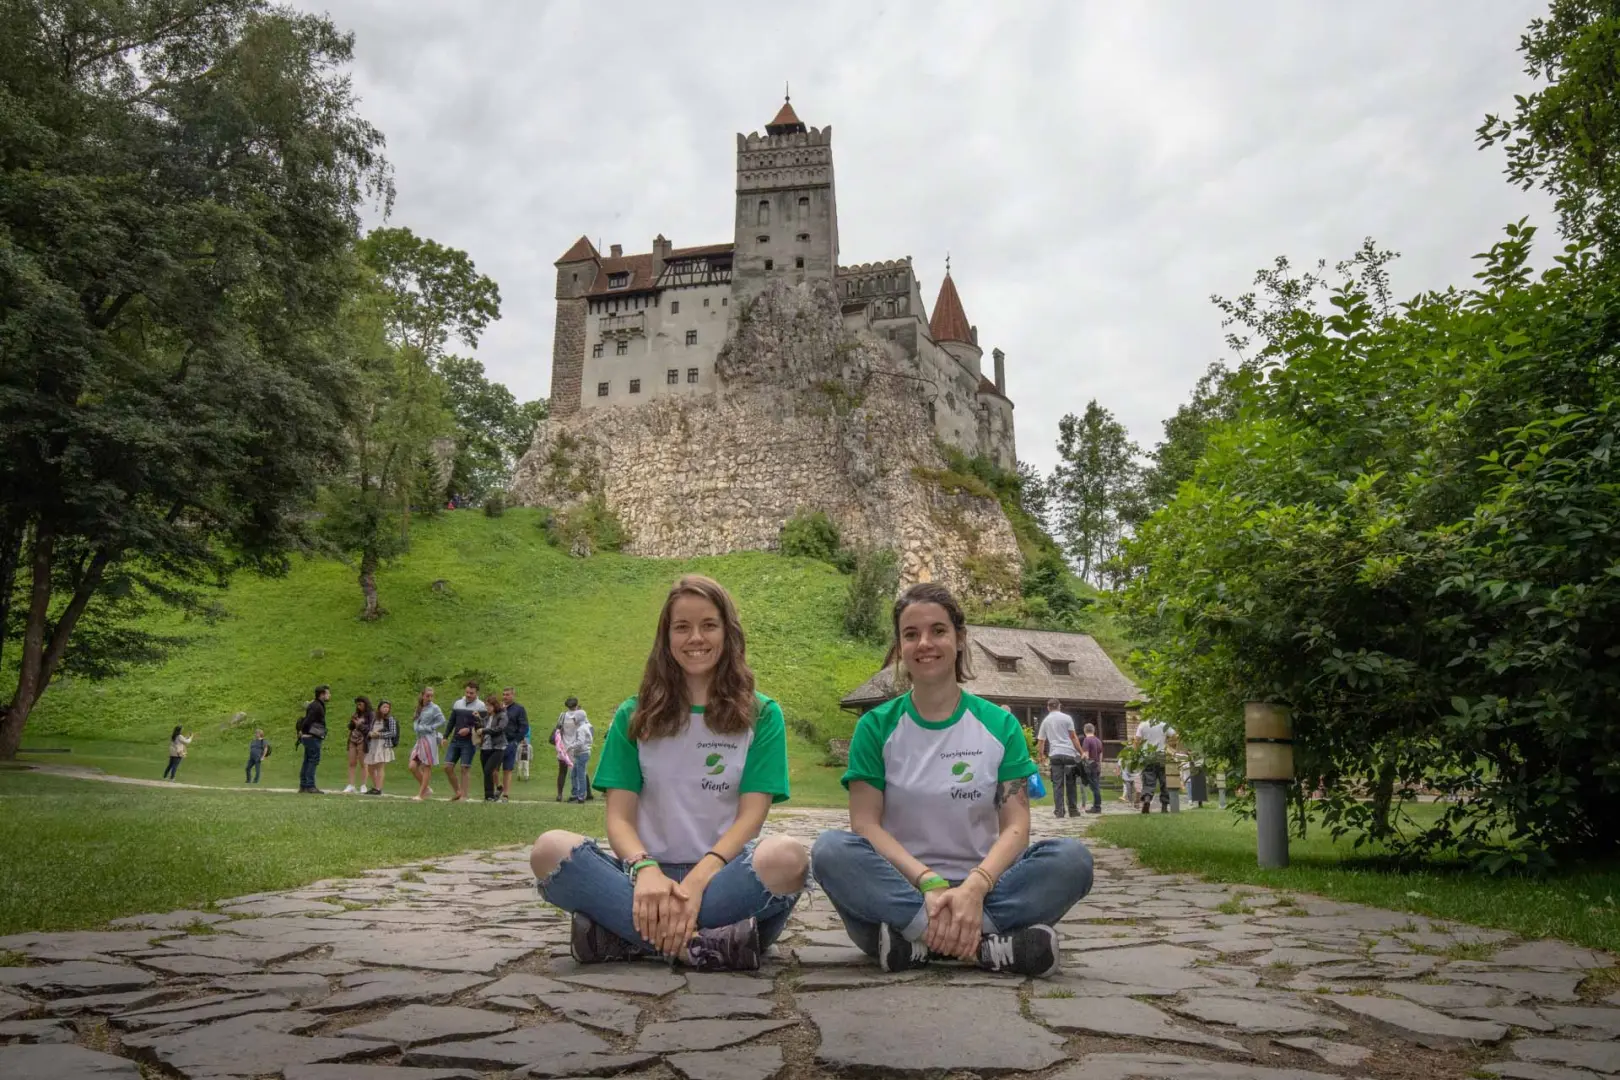 Descubre los misterios de este increíble país lleno de leyendas y castillos. Saliendo desde Bucarest, yendo a Sibiu, Rasnov y Brasov en Transilvania